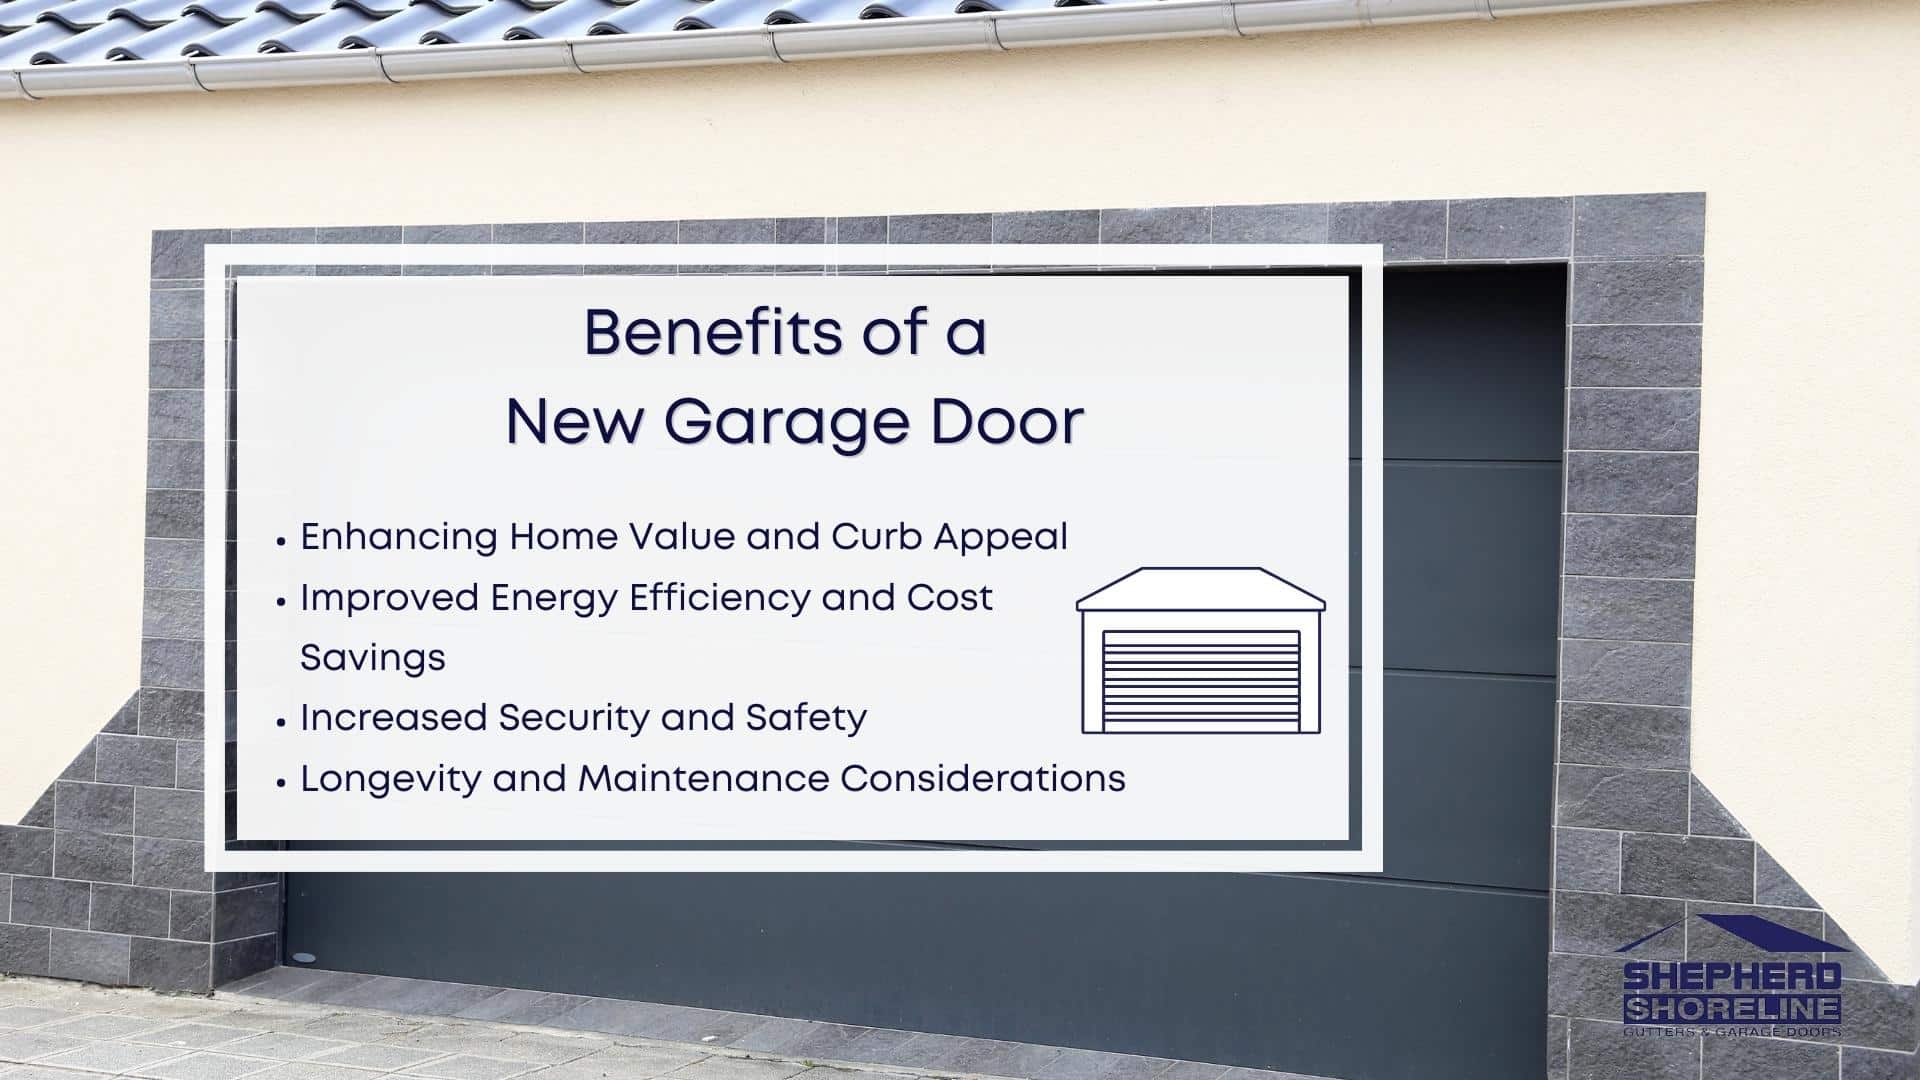 Infographic image of benefits of a new garage door